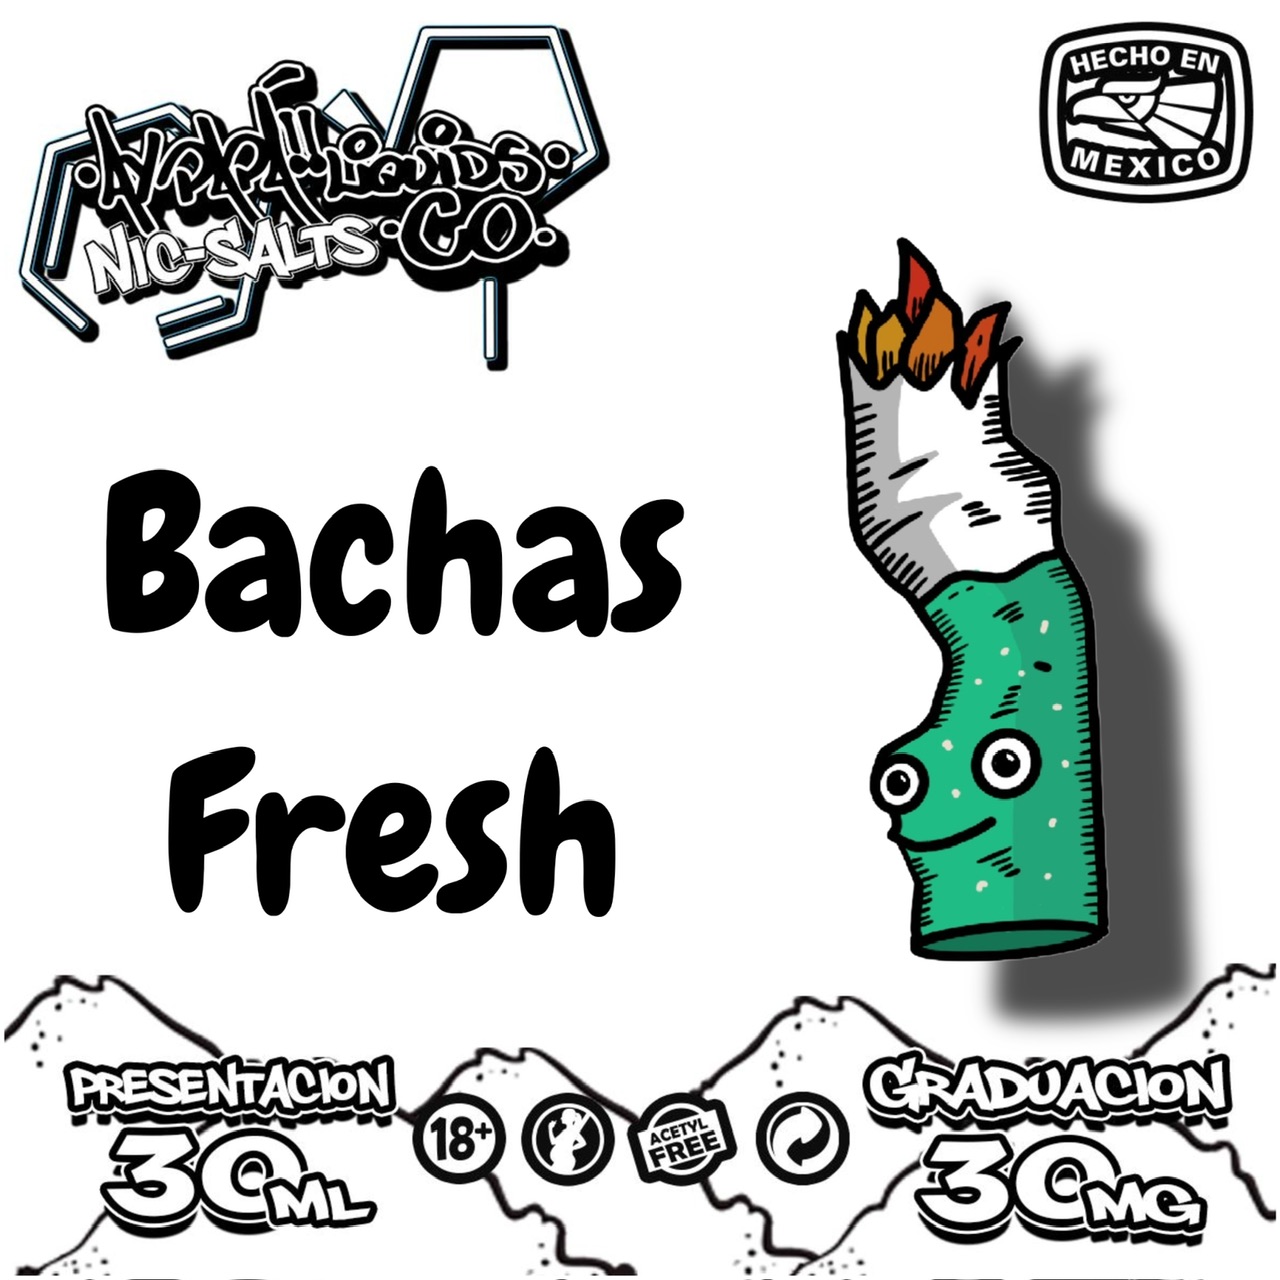 Bachas Fresh Nicsalt